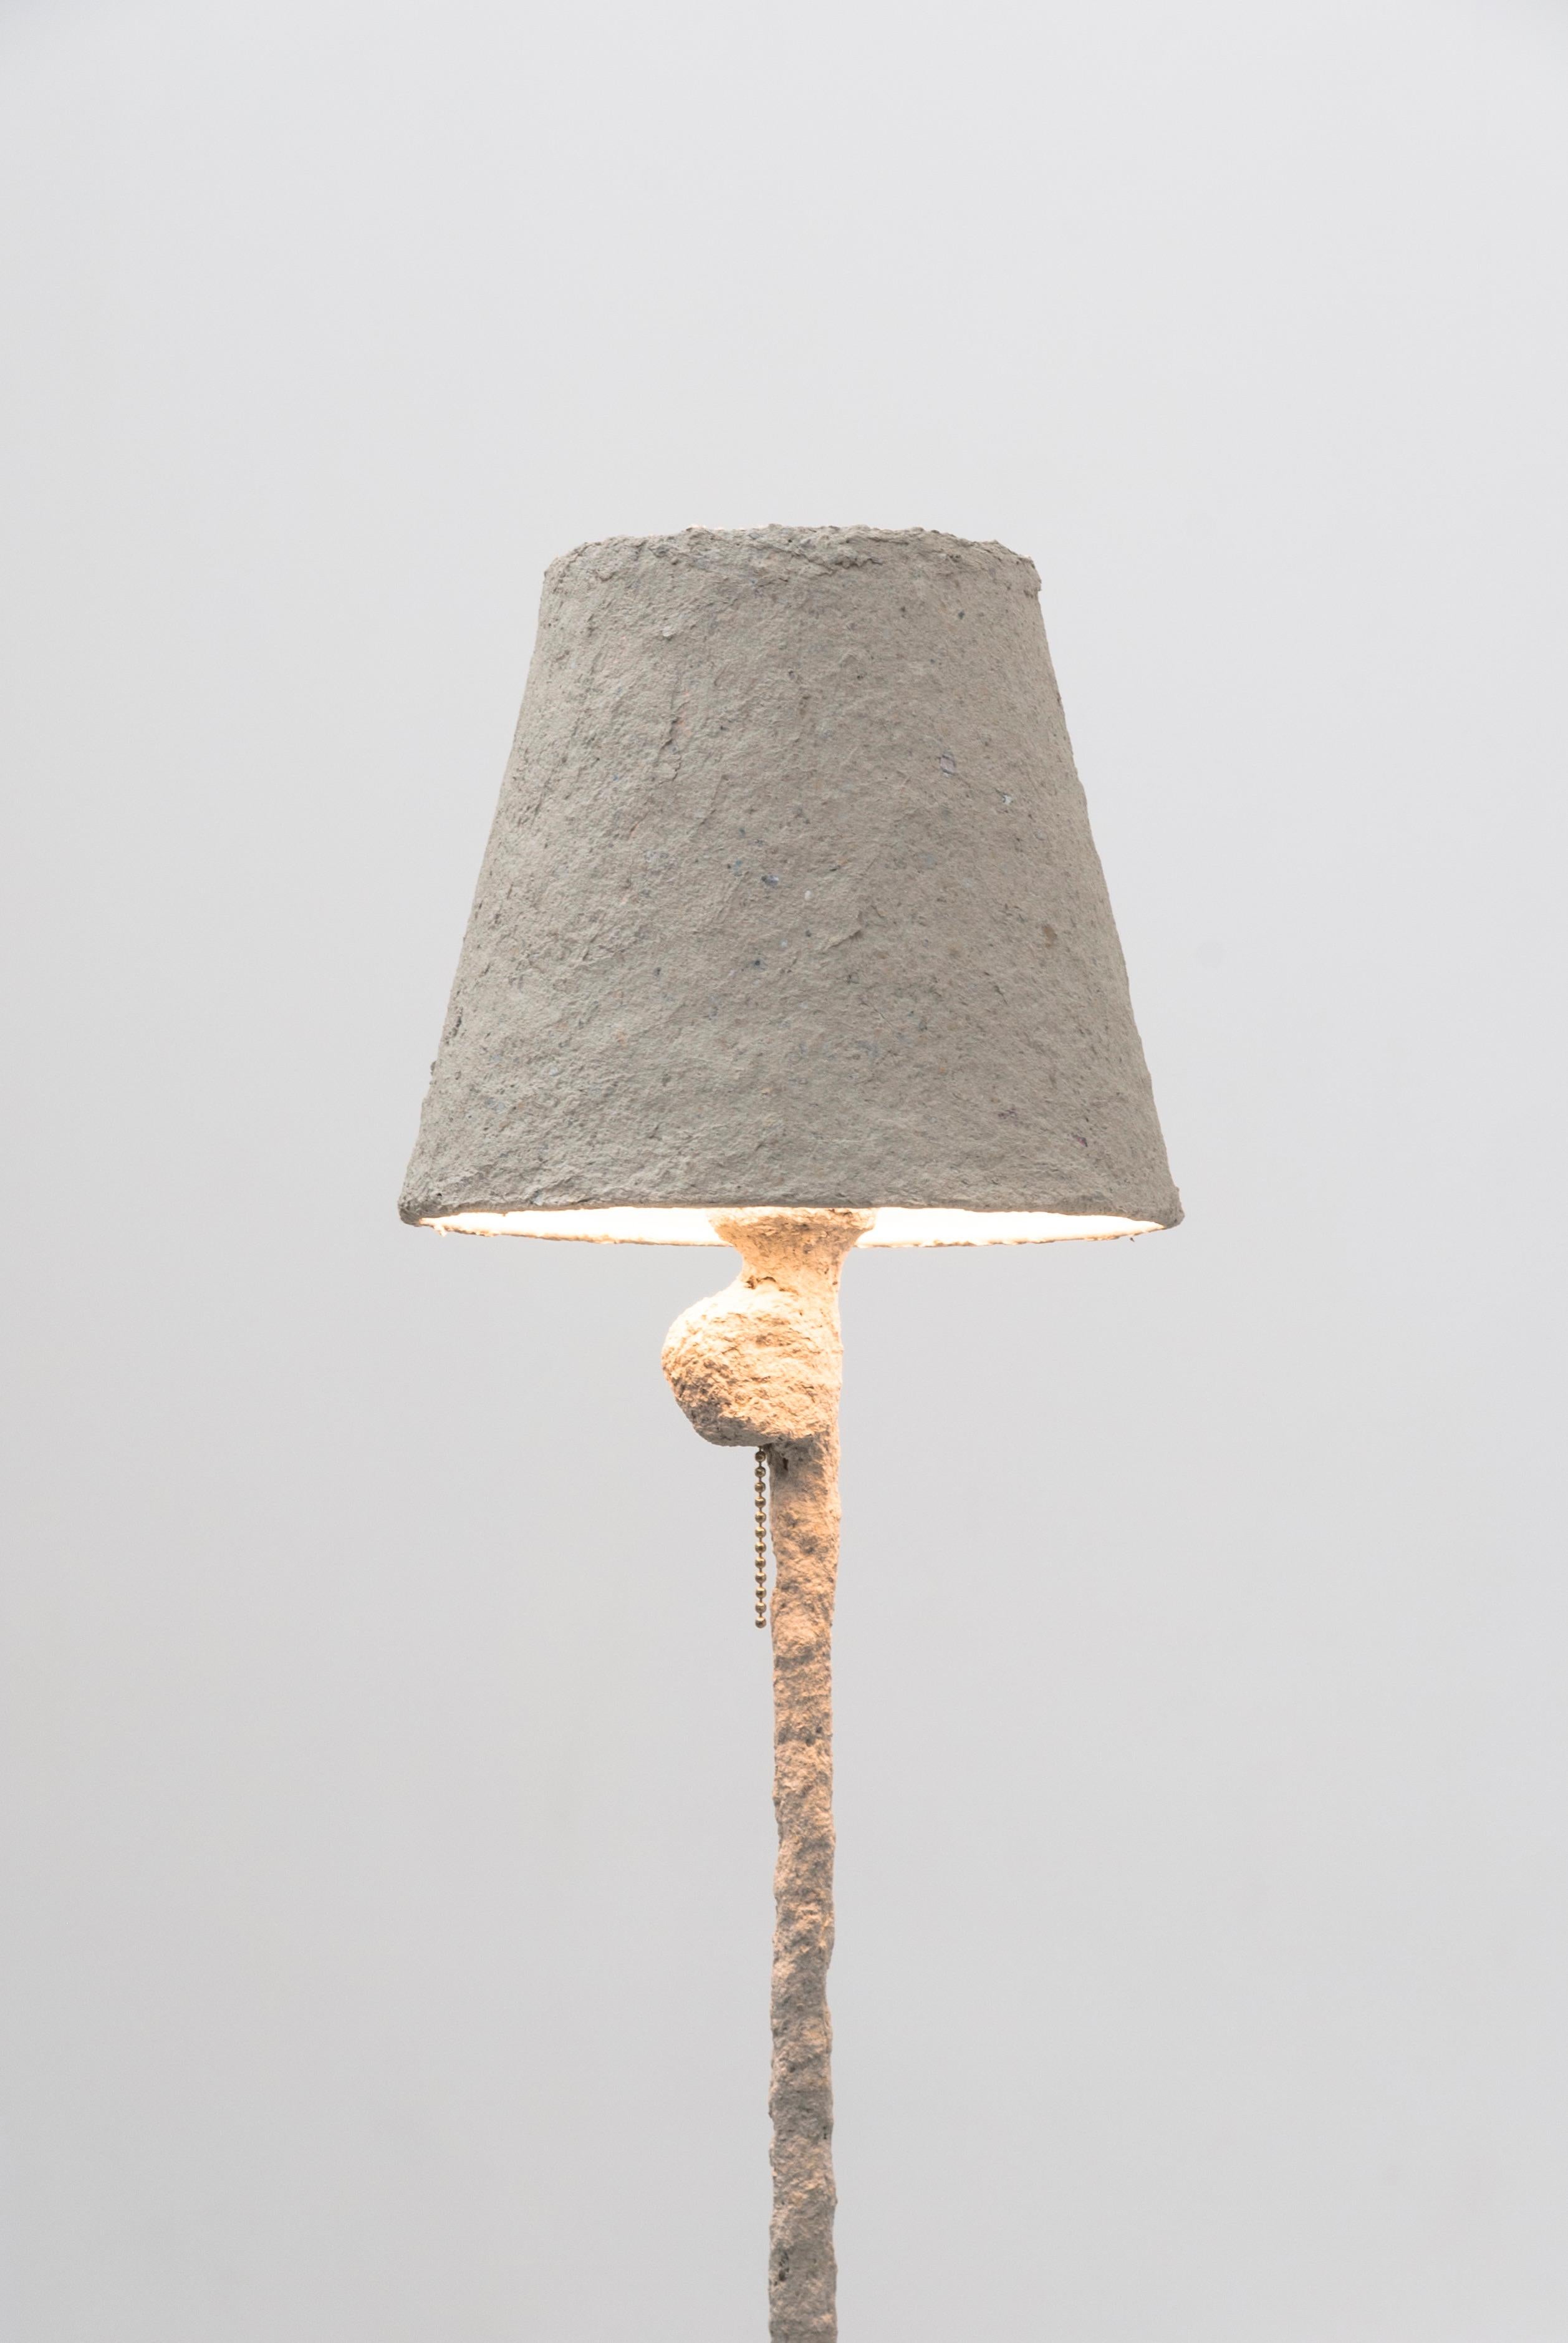 Ce lampadaire Giacometti de Bailey Fontaine s'inspire des œuvres d'Alberto Giacometti. La lampe est sculptée à partir de matériaux non conventionnels comme l'argile papier et le silicone, qui affichent une riche texture sur une surface biomorphique.